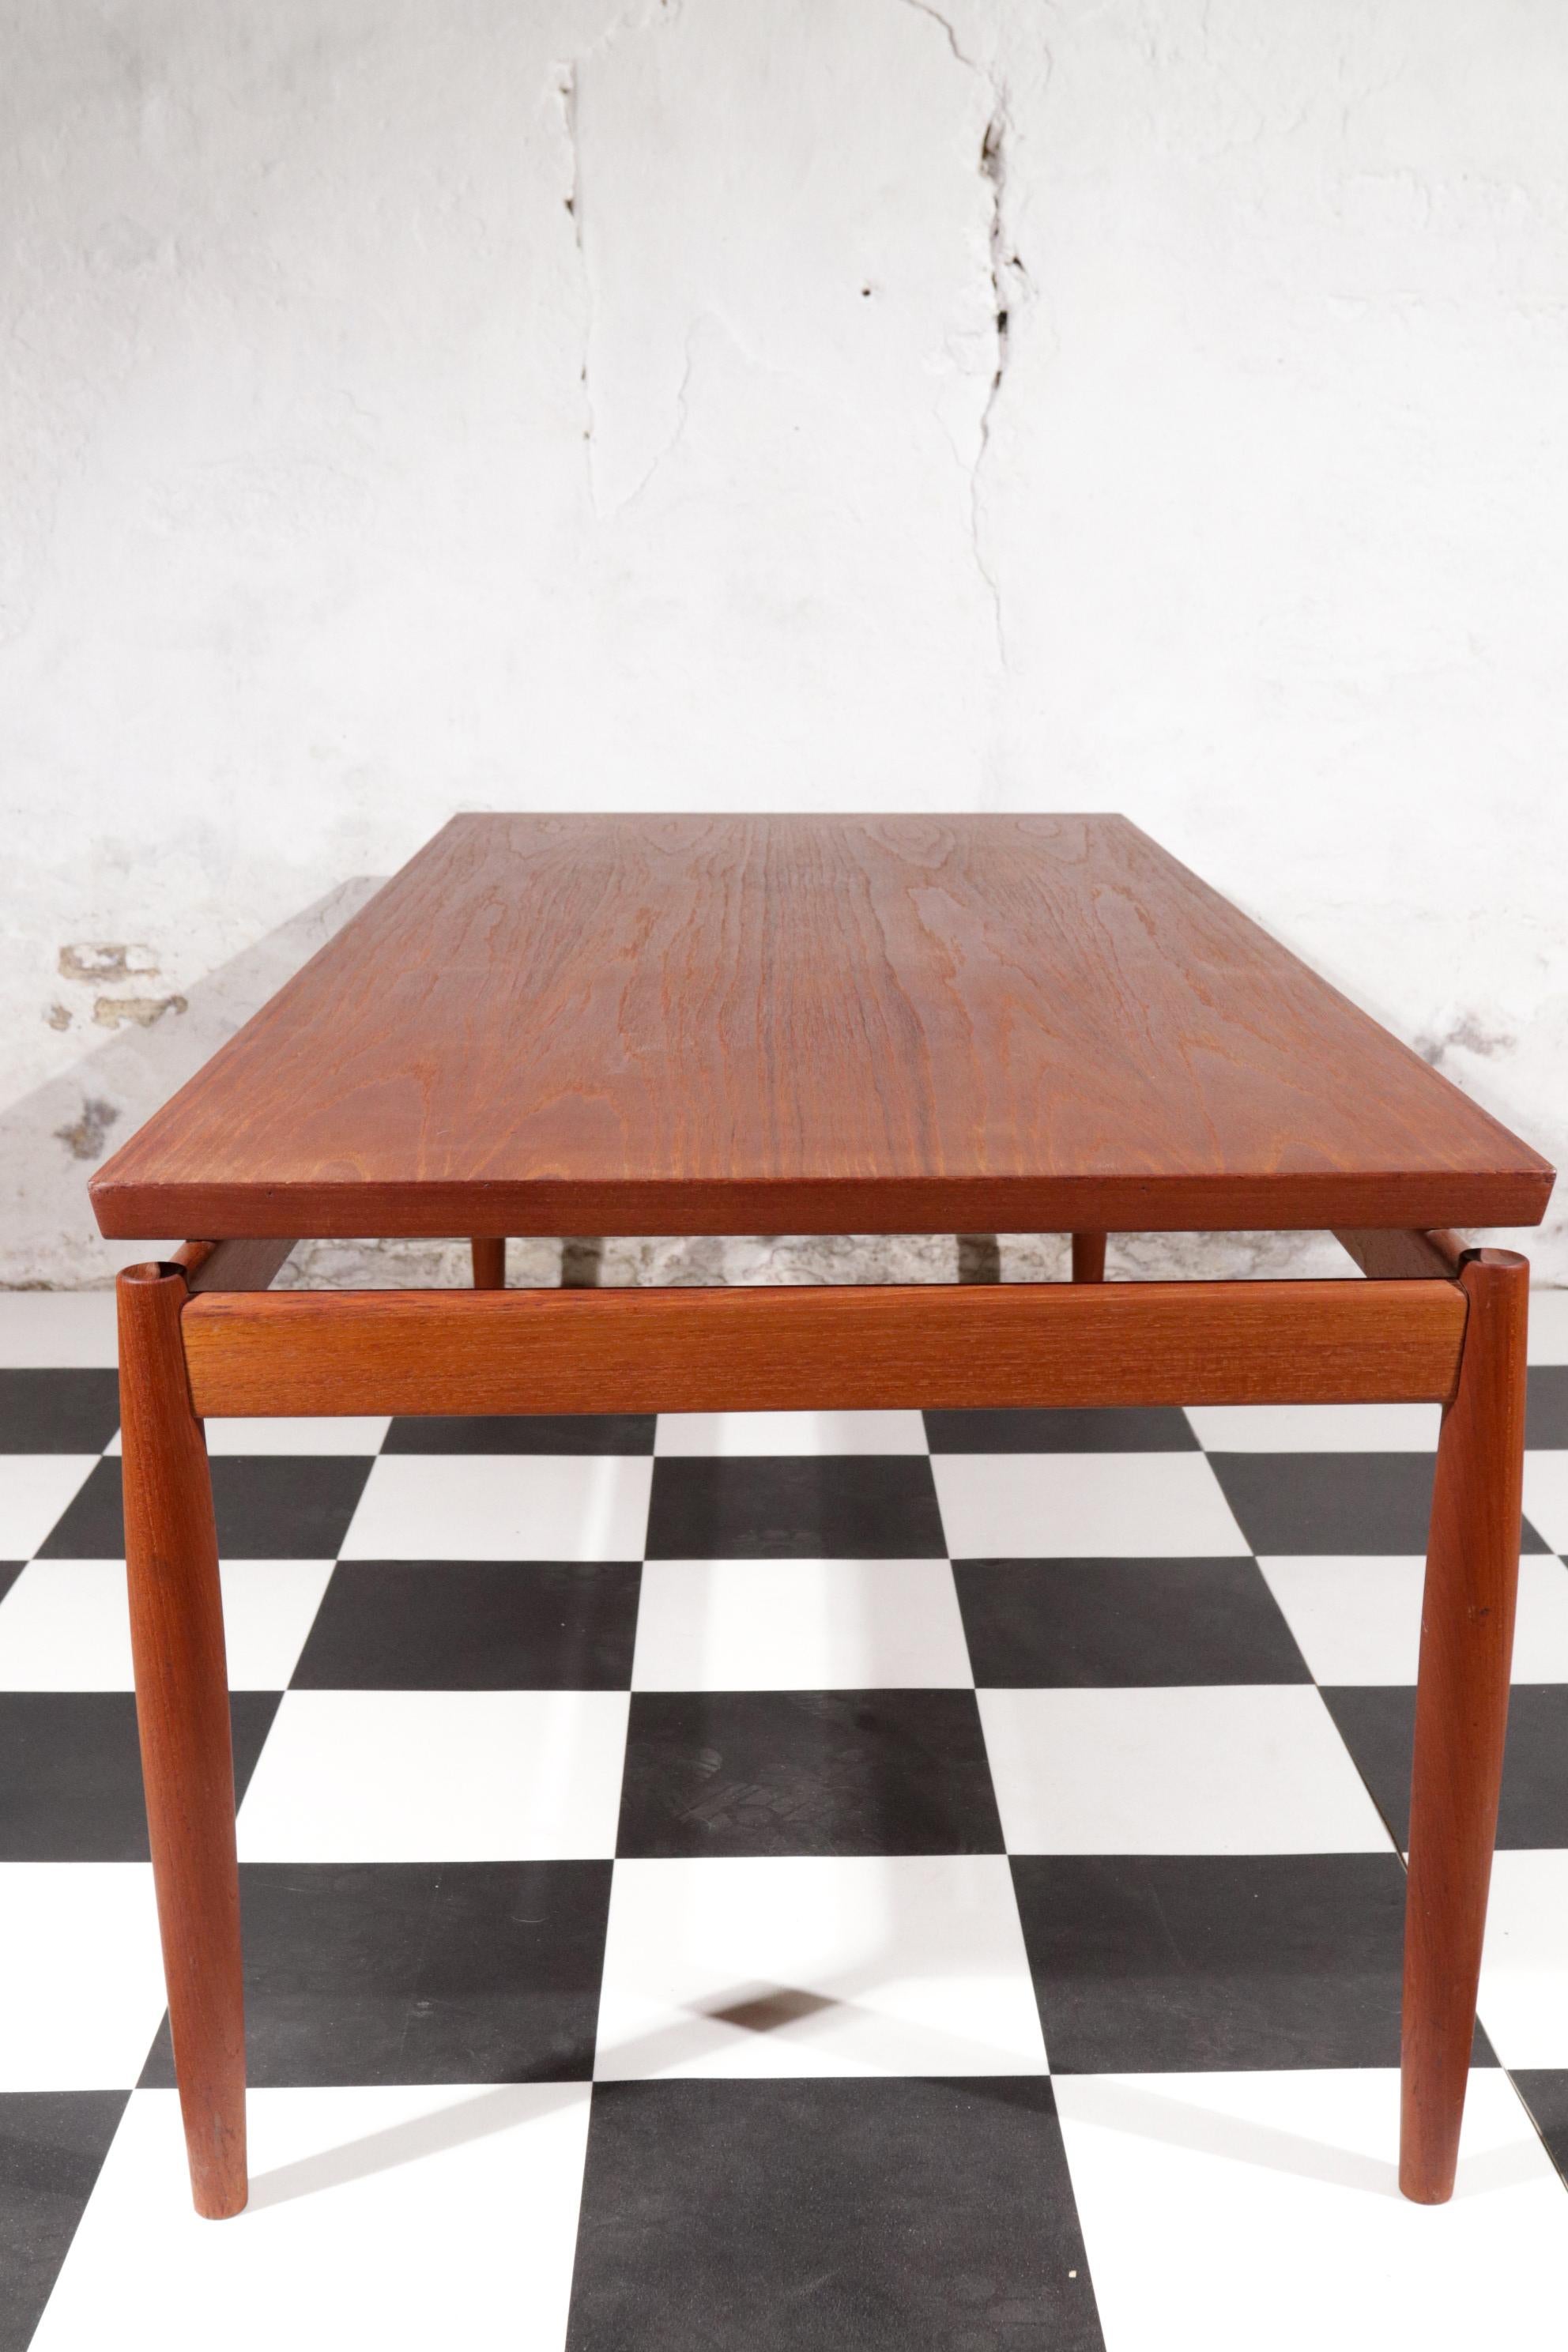 Danish Design Grete Jalk Sofa Table, Model 622 / 54 Teak France & Son, 1960s For Sale 4